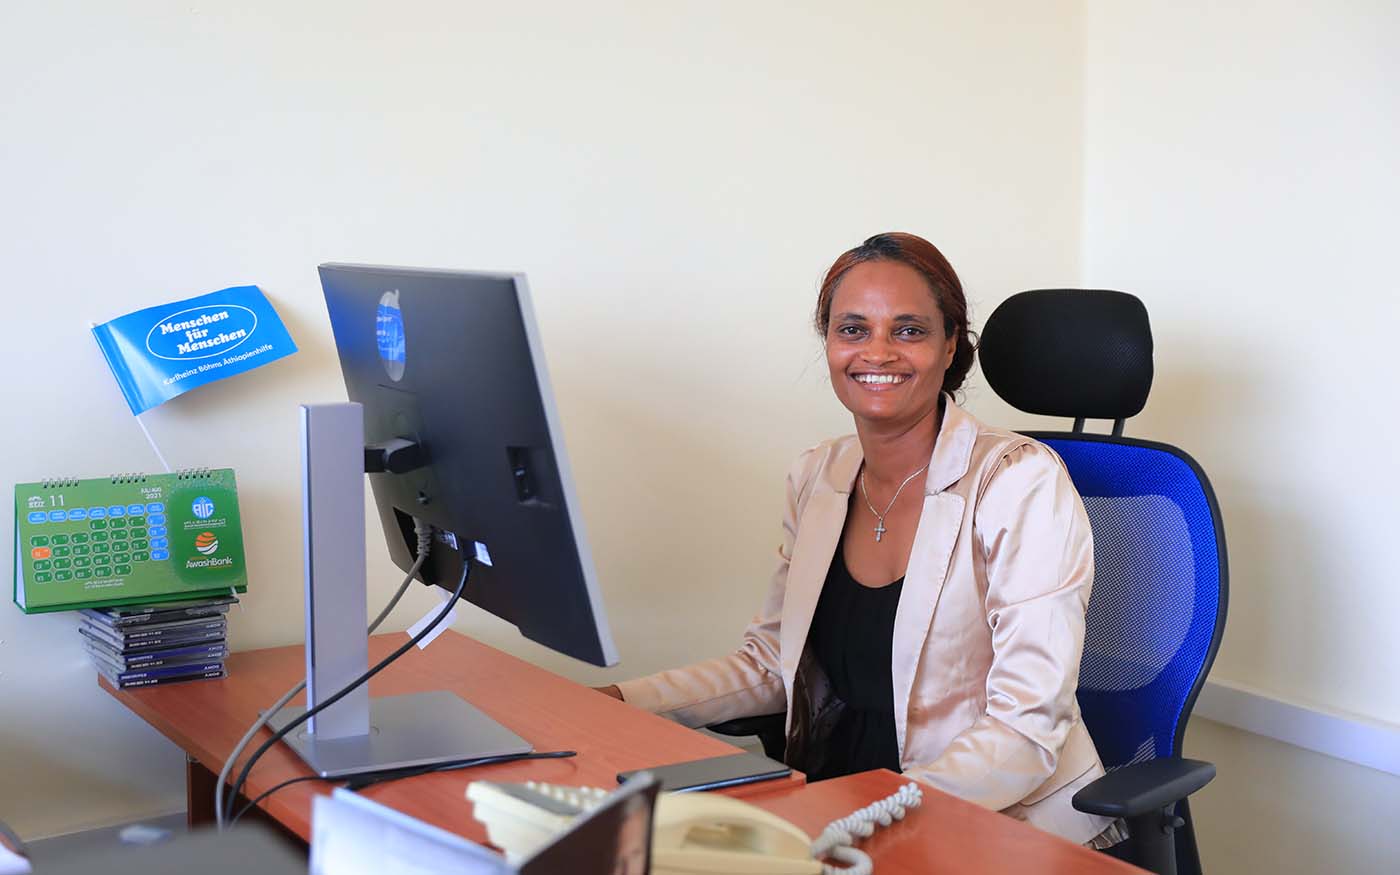 Äthiopische Mitarbeiterin Bahritu sitzt vor Computer und lächelt